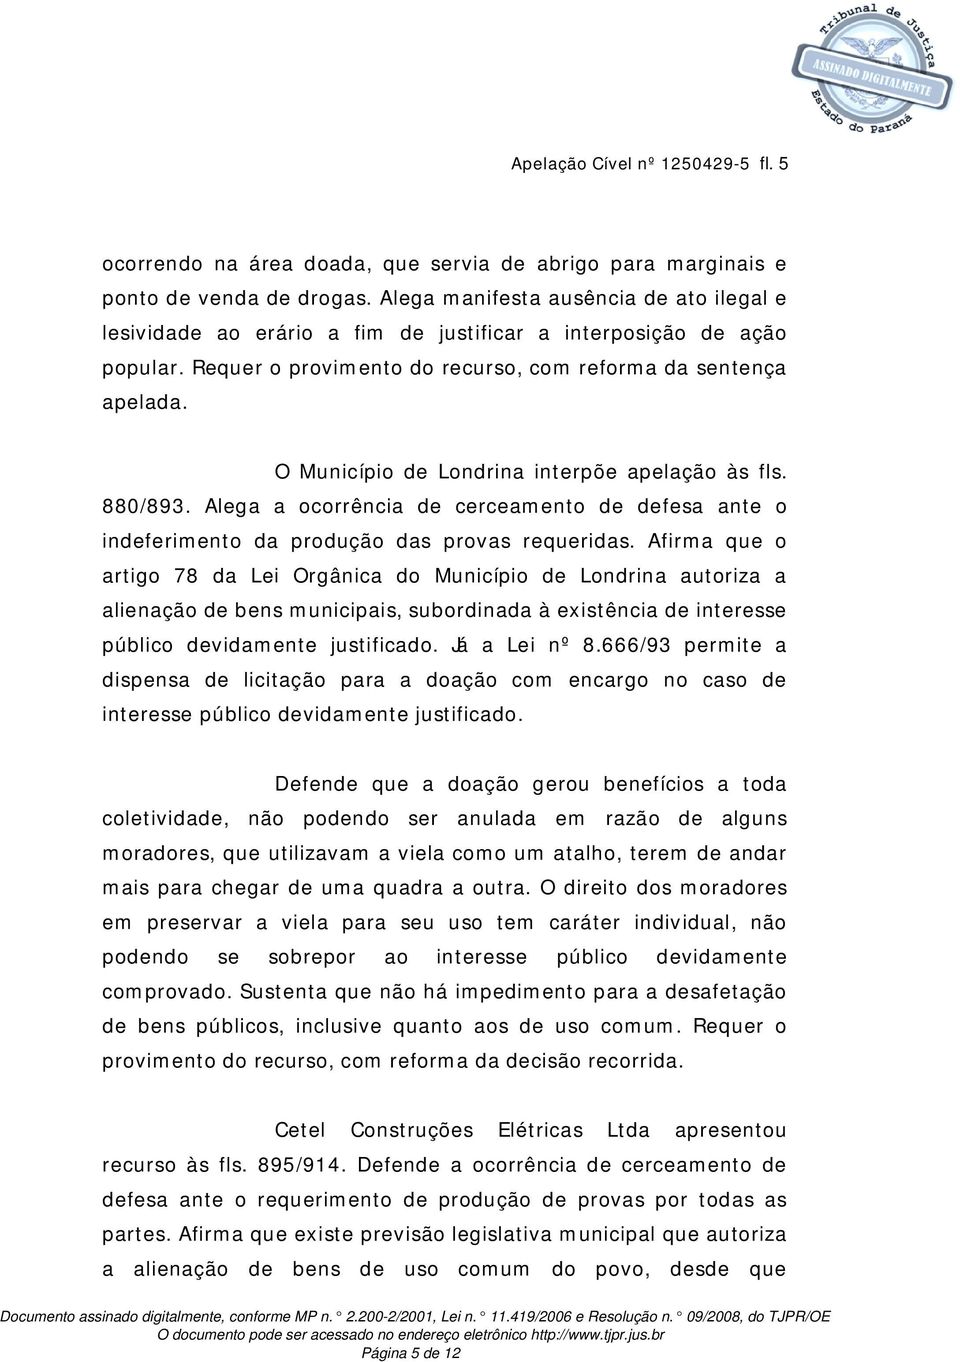 O Município de Londrina interpõe apelação às fls. 880/893. Alega a ocorrência de cerceamento de defesa ante o indeferimento da produção das provas requeridas.